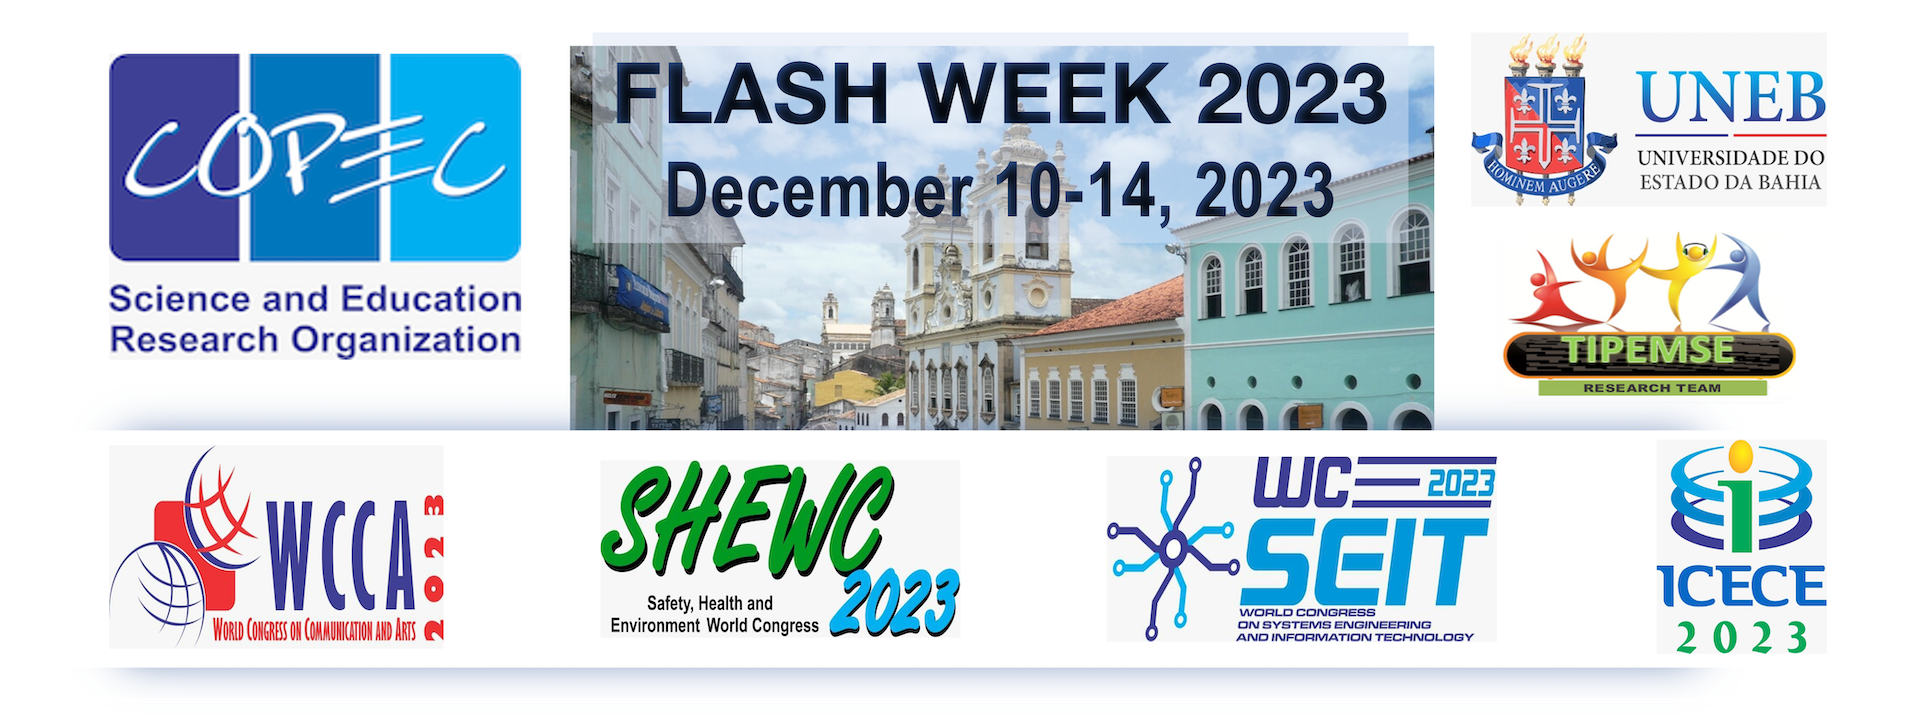 COPEC Flash Week 2023: comunicação, tecnologia, educação e meio ambiente